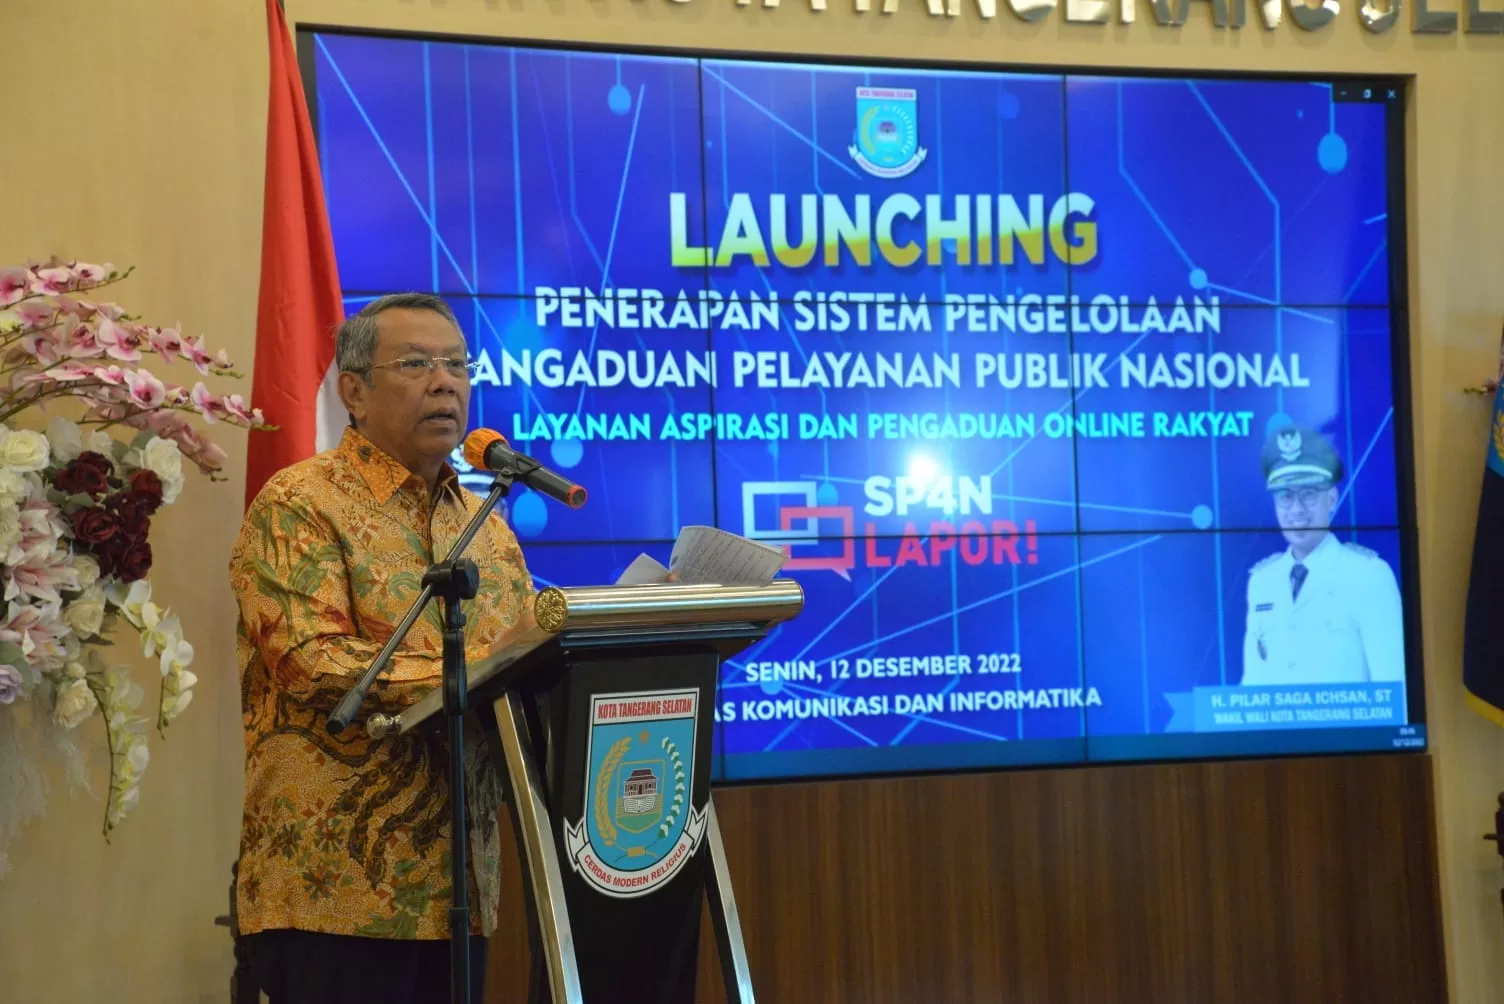 Wali Kota Benyamin Davnie saat launching Sistem Pengelolaan Pengaduan Pelayanan Publik Nasional - Layanan Aspirasi dan Pengaduan Online Rakyat (SP4N-LAPOR) di Tangerang Selatan